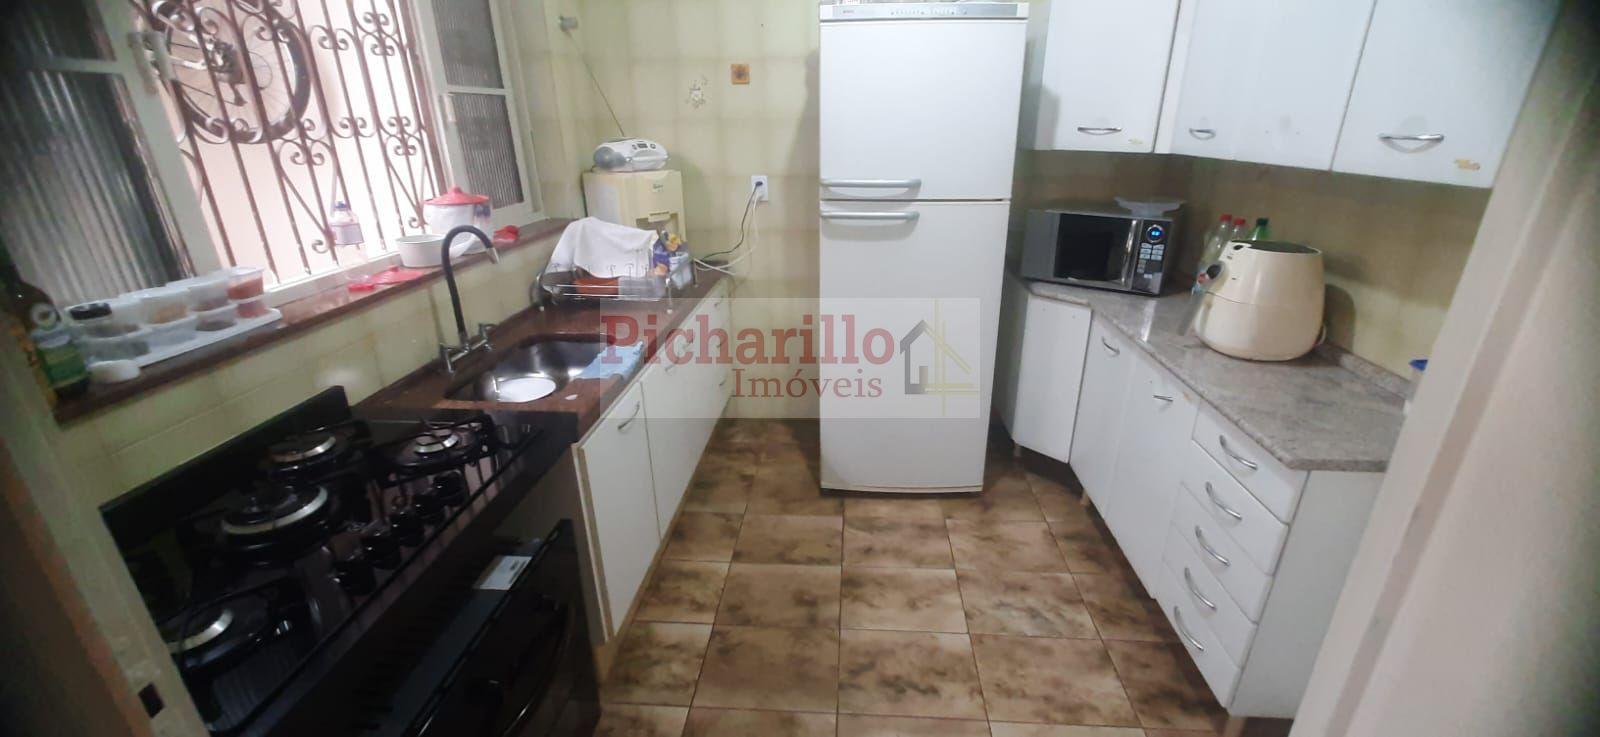 Casa com 3 dormitórios (1 suíte)  à venda, 230 m² - Jardim São João Batista - São Carlos/SP